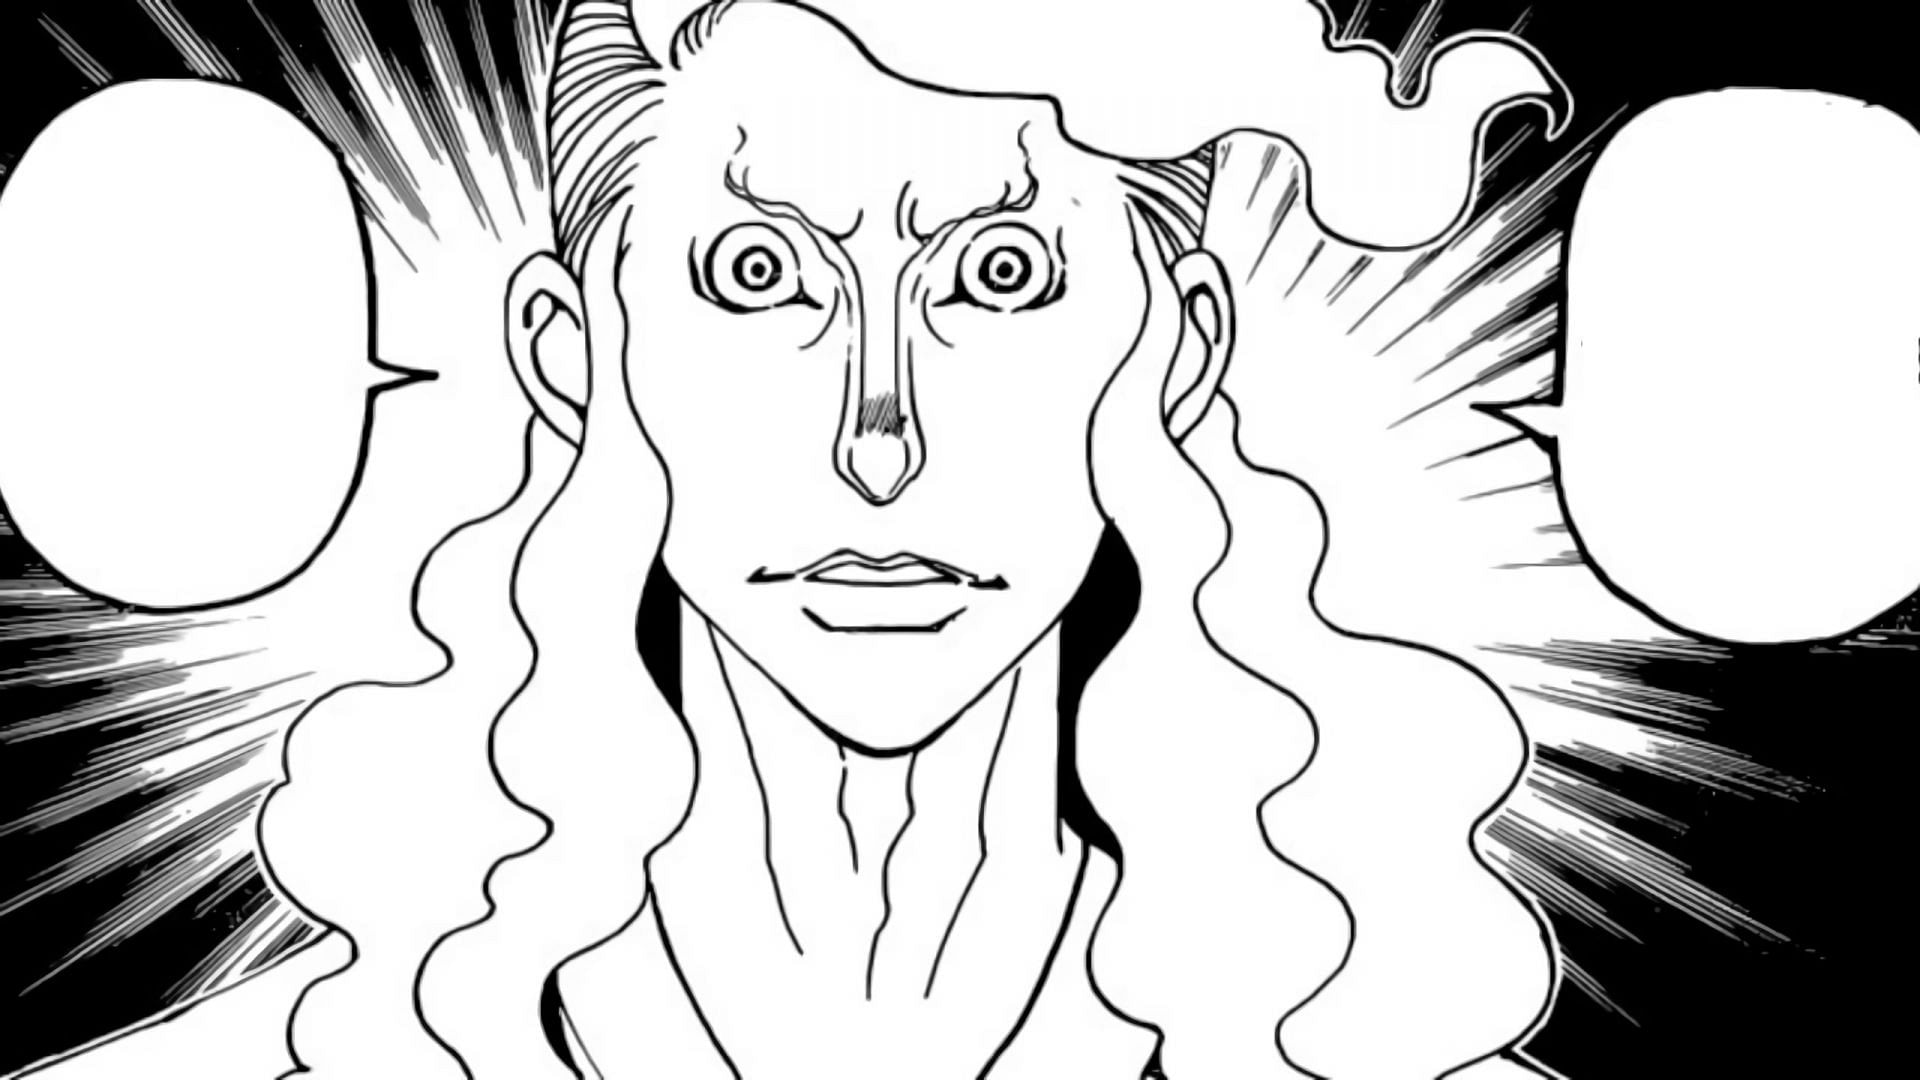 Hinrigh as seen in the manga (Image via Shueisha)